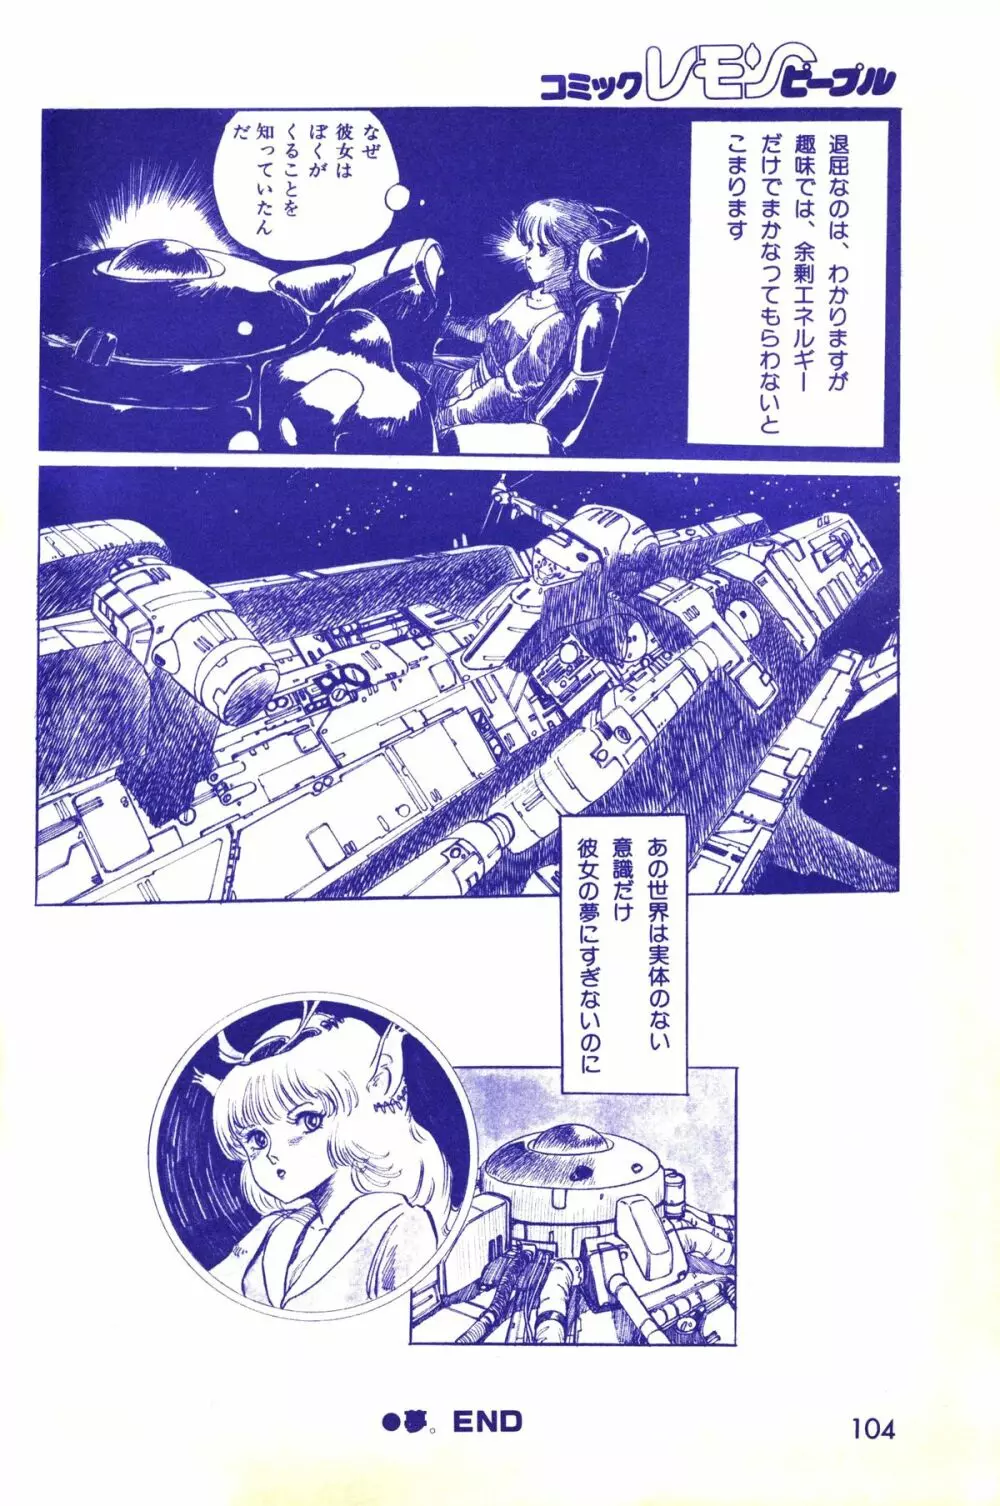 レモンピープル 1983年10月号 Vol.21 105ページ